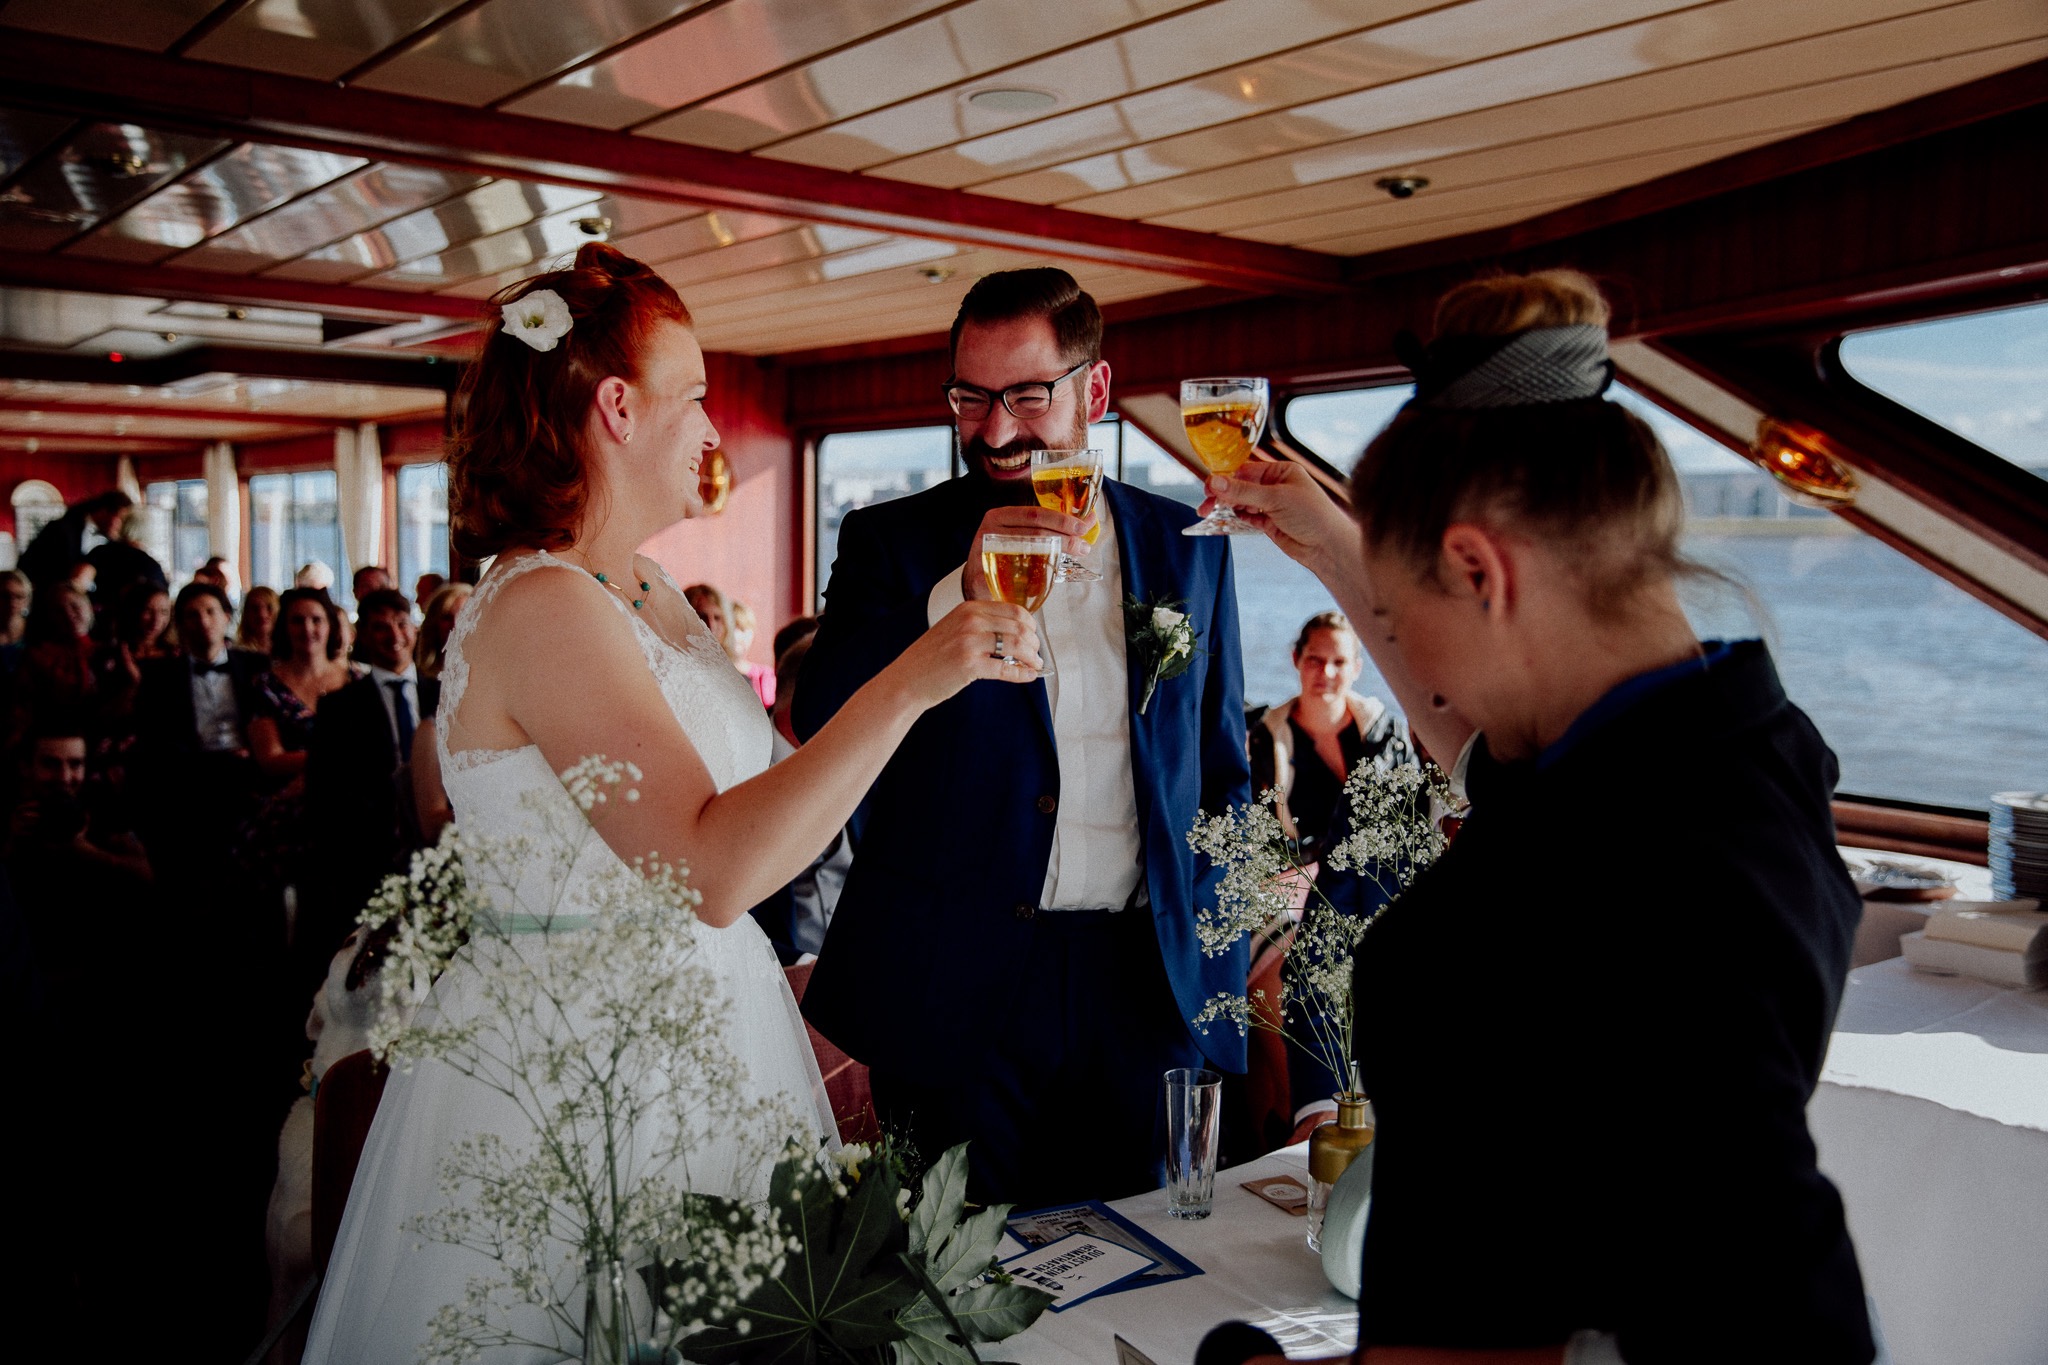 ein Brautpaar bei einer freien Trauung auf der Barkasse mit Constanze Marienfeld. Alle stossen lachend mit einem kleinen Glas Bier an. (/images/bilder/thumbs/376_6_bild_WSMM7009_Kopie.jpg)